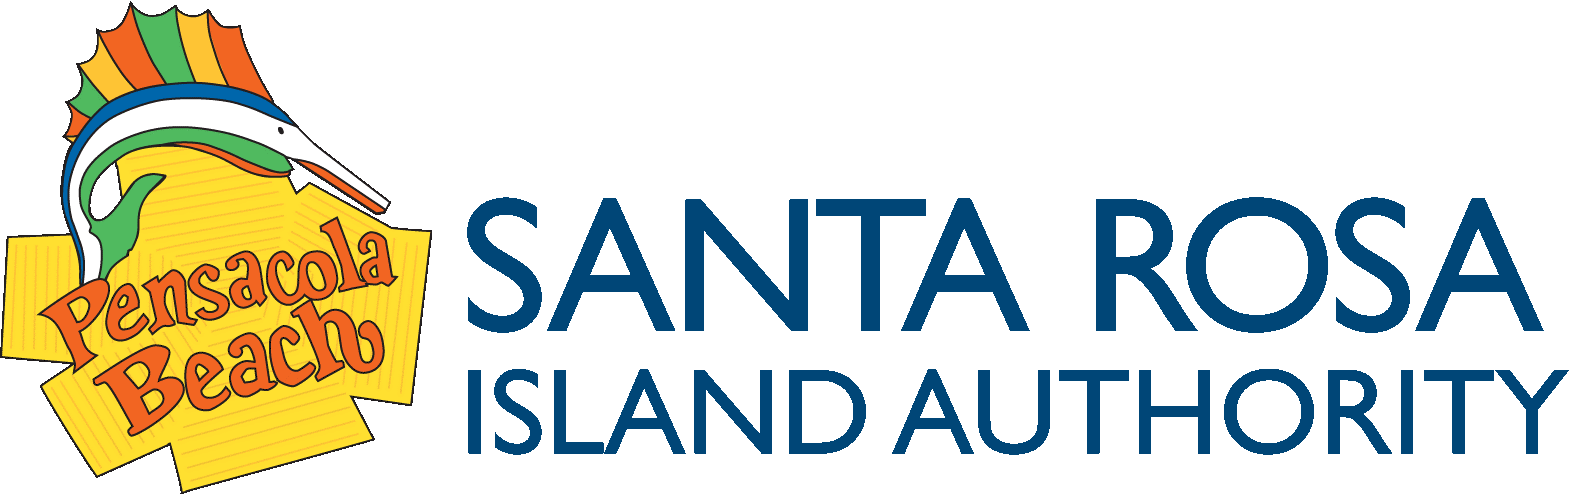 Santa Rosa Island Authority logo